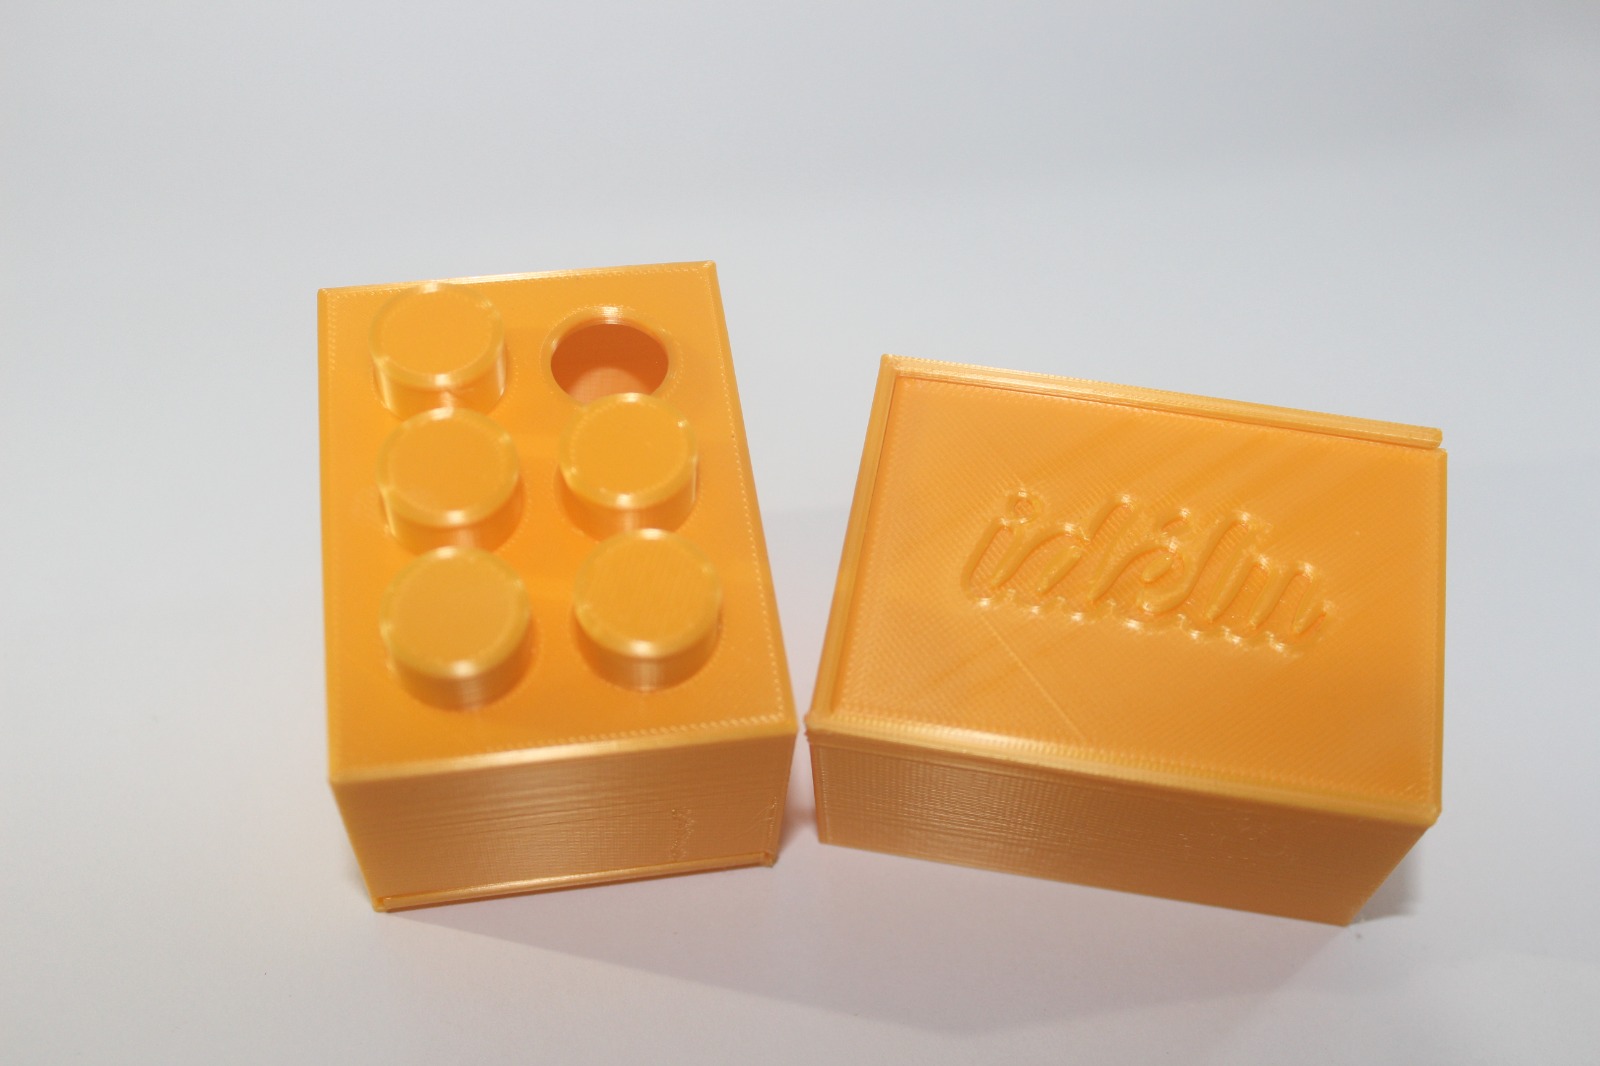 Dos cajas amarillas mostrando perspectivas diferentes del mismo producto. La de la izquierda con una "A" acentuada en Braille hecha con fichas puestas sobre orificios en esa cara de la caja. A la derecha se muestra una cara de la caja con el logo nominativo de Idélu.